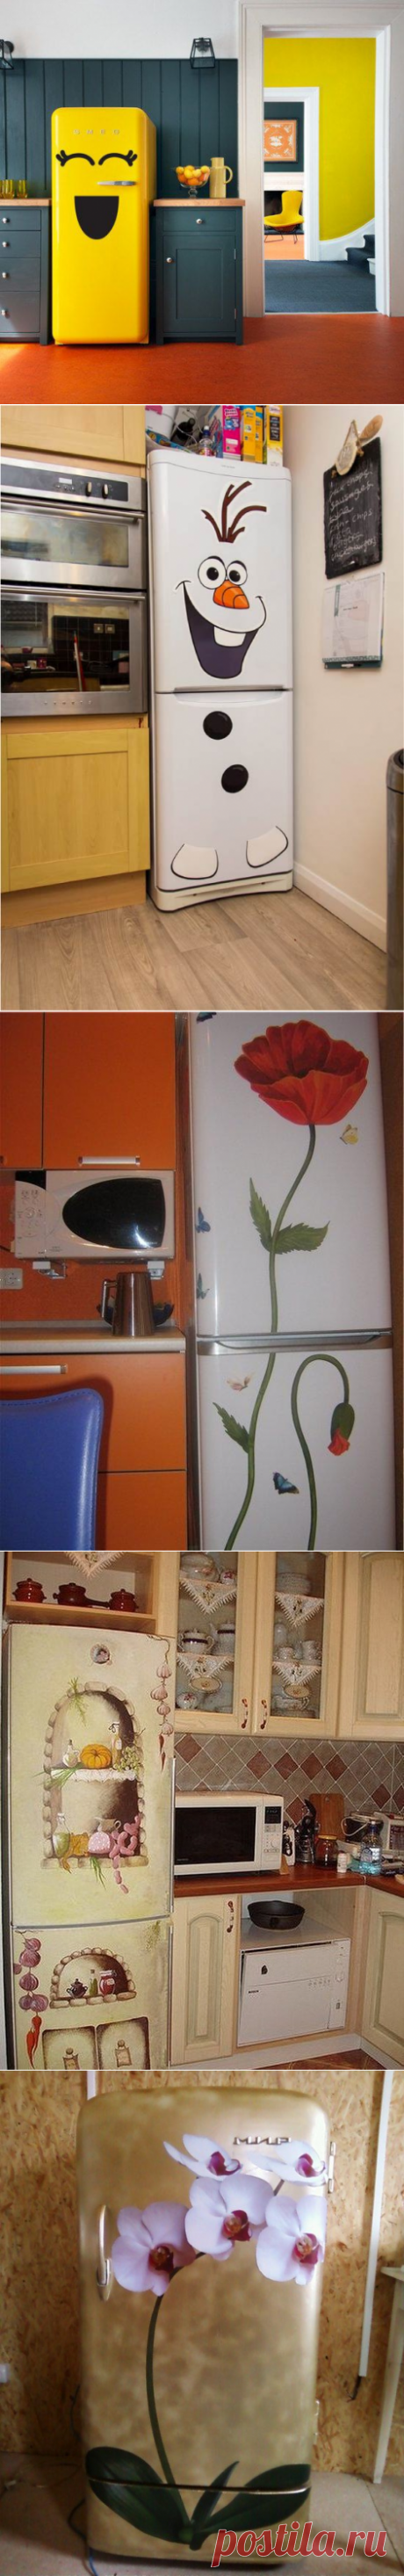 Превращаем холодильник в смелое дизайнерское решение — Сделай сам, идеи для творчества - DIY Ideas